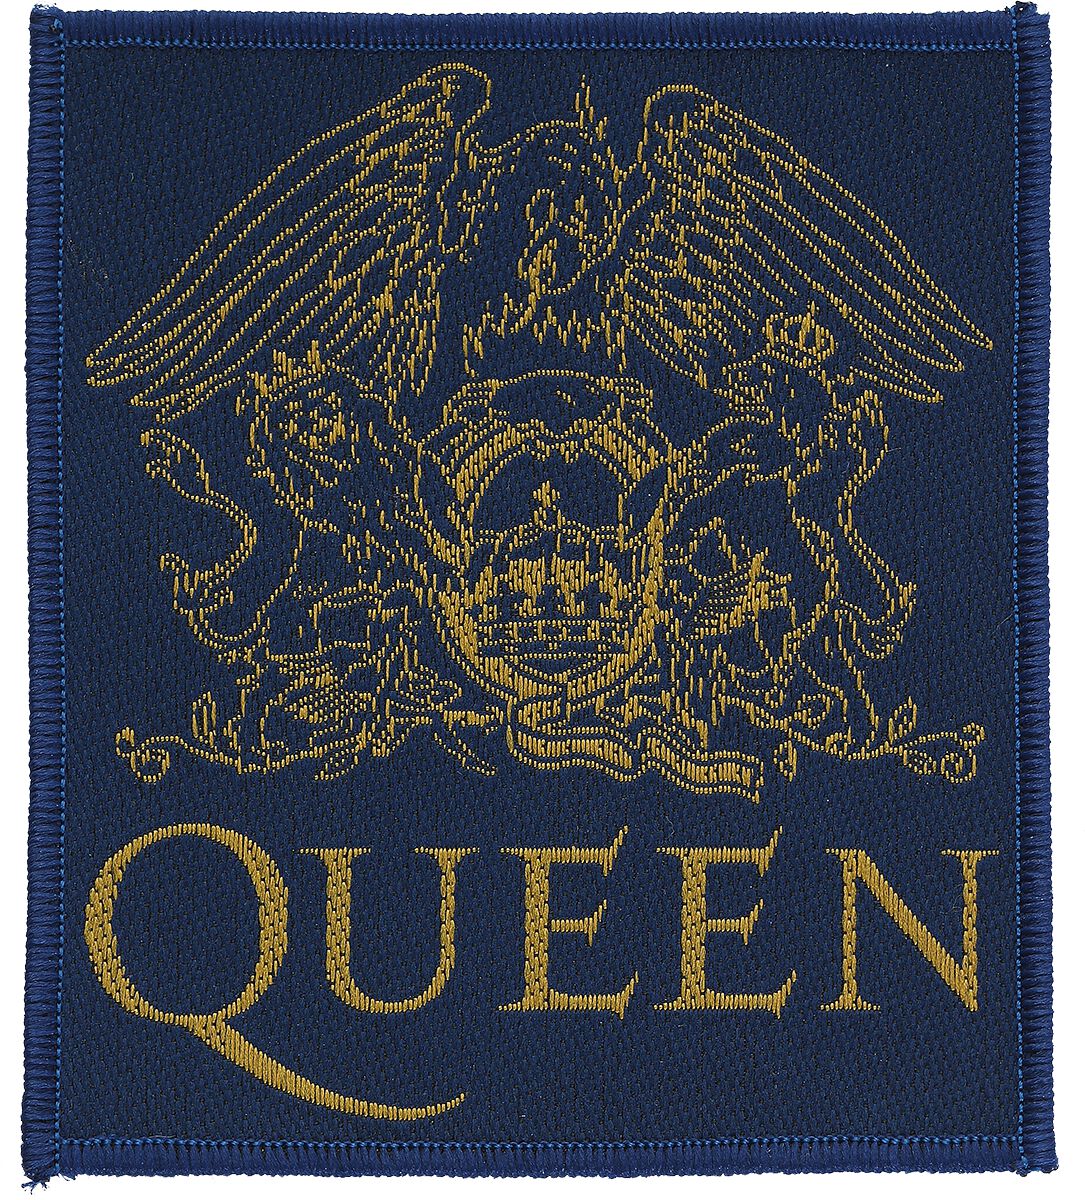 Queen Patch - Crest - schwarz/gelb  - Lizenziertes Merchandise!